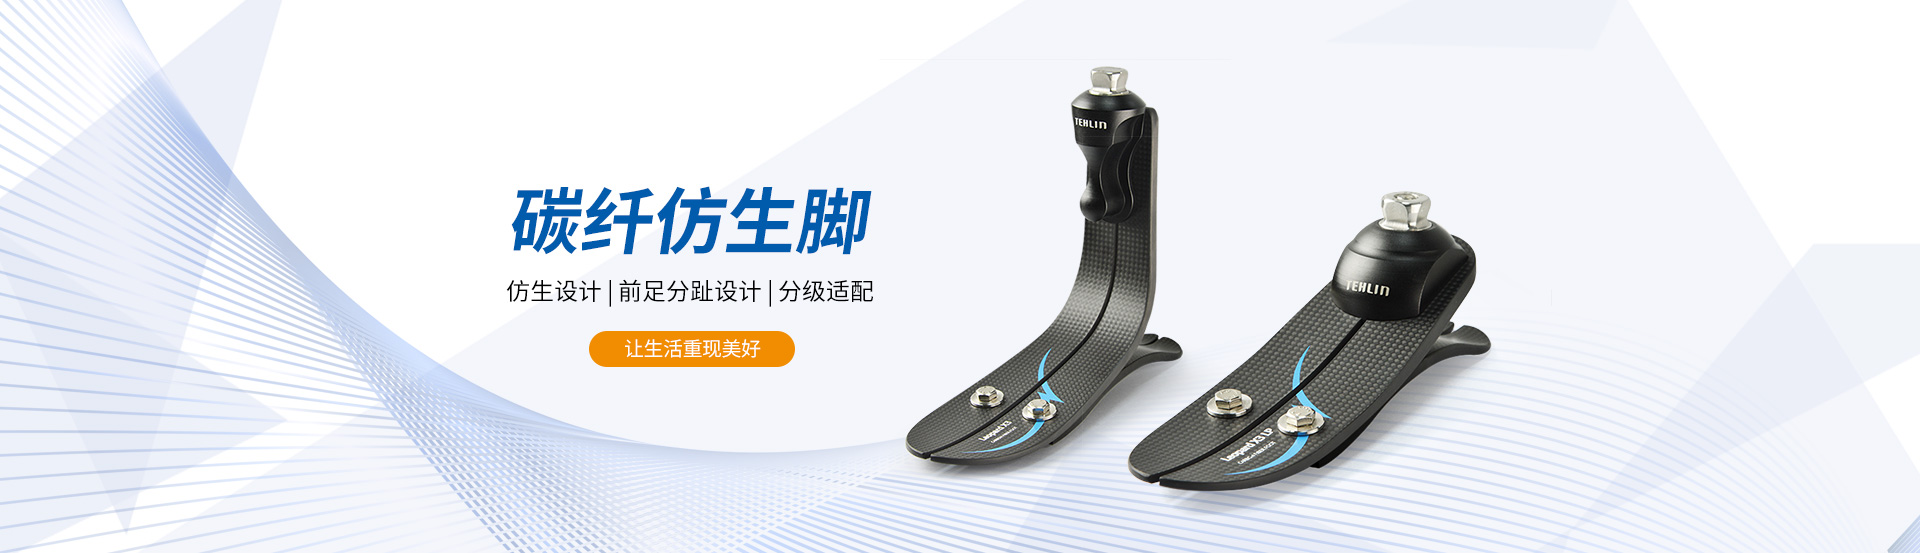 bwin·必赢(中国)唯一官方网站_产品6179